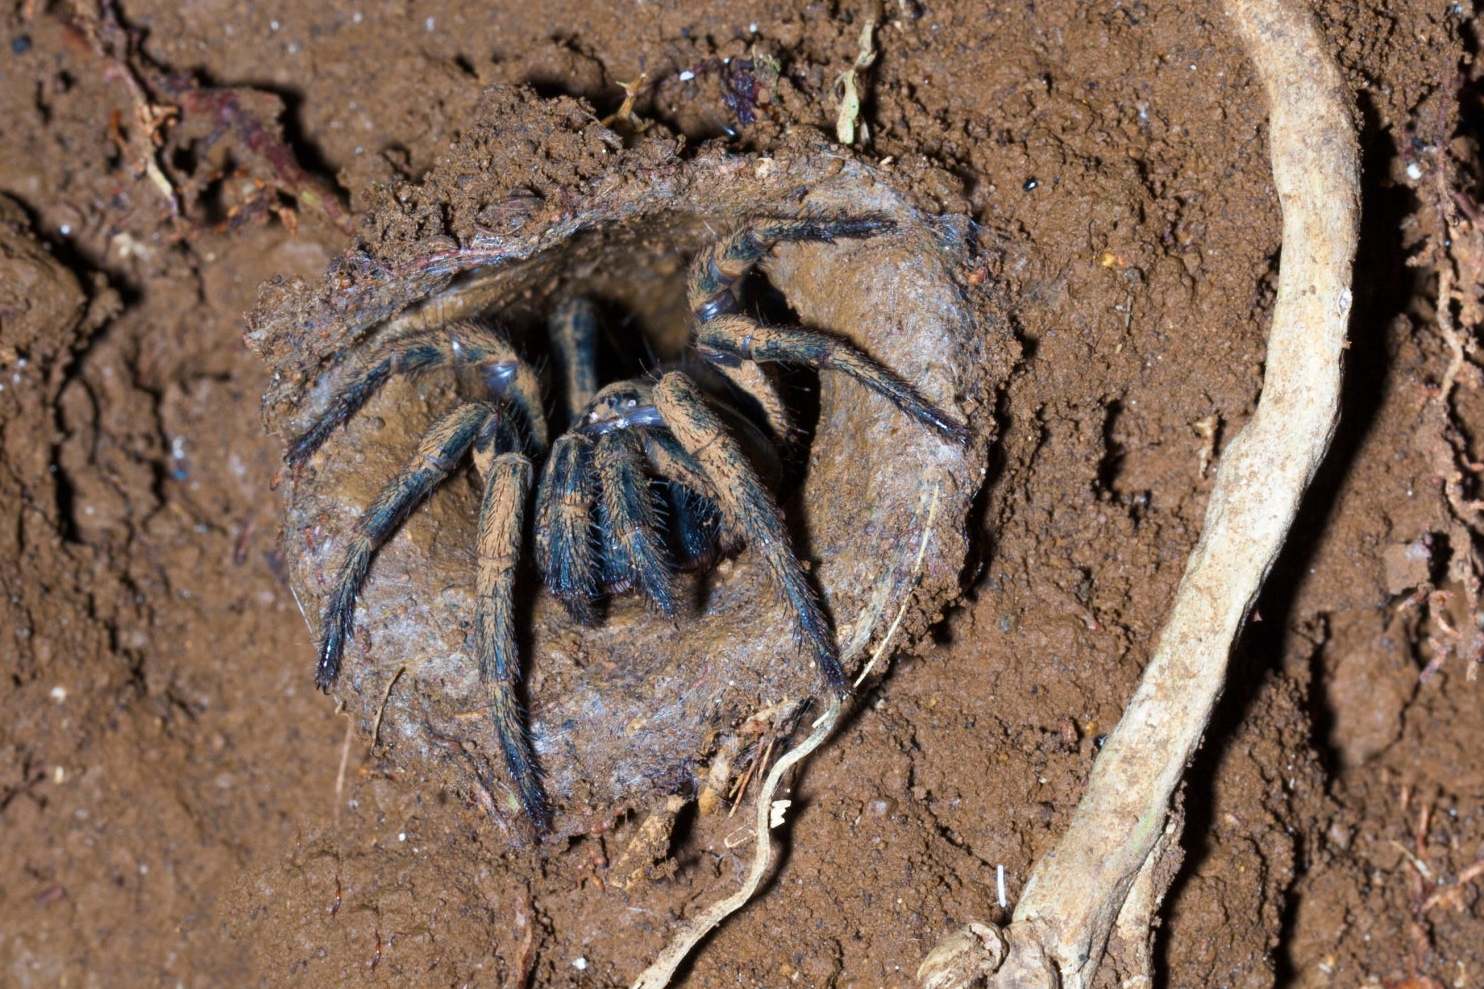 Trapdoor spider in mud burrow, Queensland